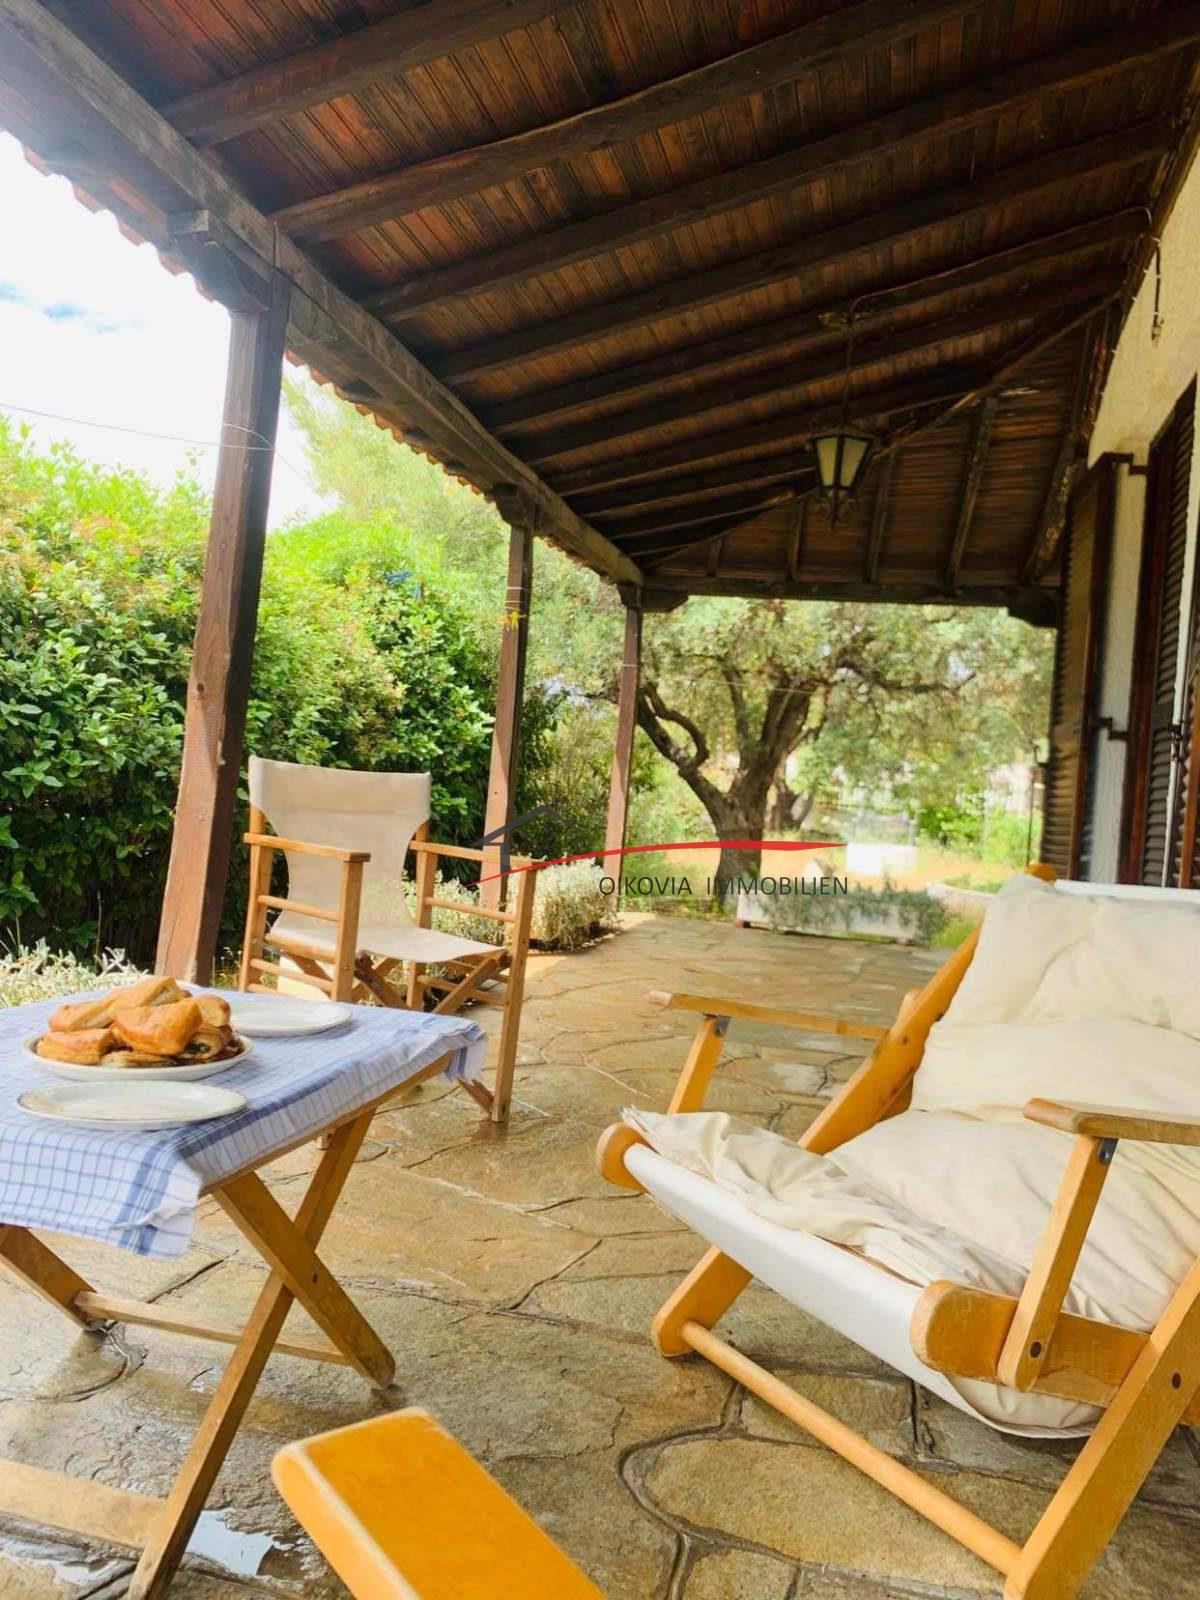 Ζήστε αυθεντική μεσογειακή ζωή σε μια παραδοσιακή μονοκατοικία στη Νικήτη